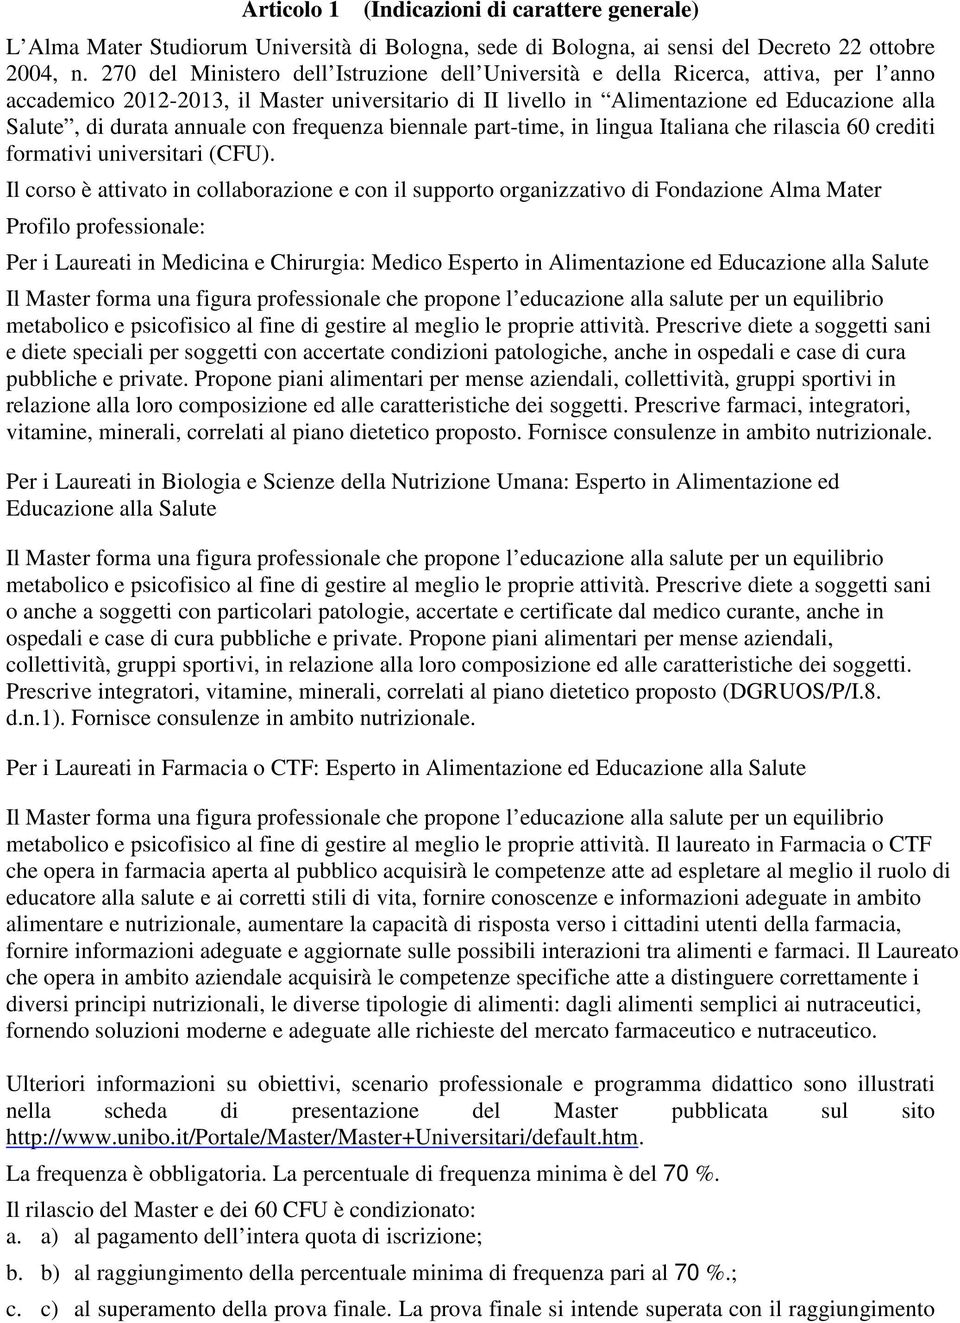 annuale con frequenza biennale part-time, in lingua Italiana che rilascia 60 crediti formativi universitari (CFU).